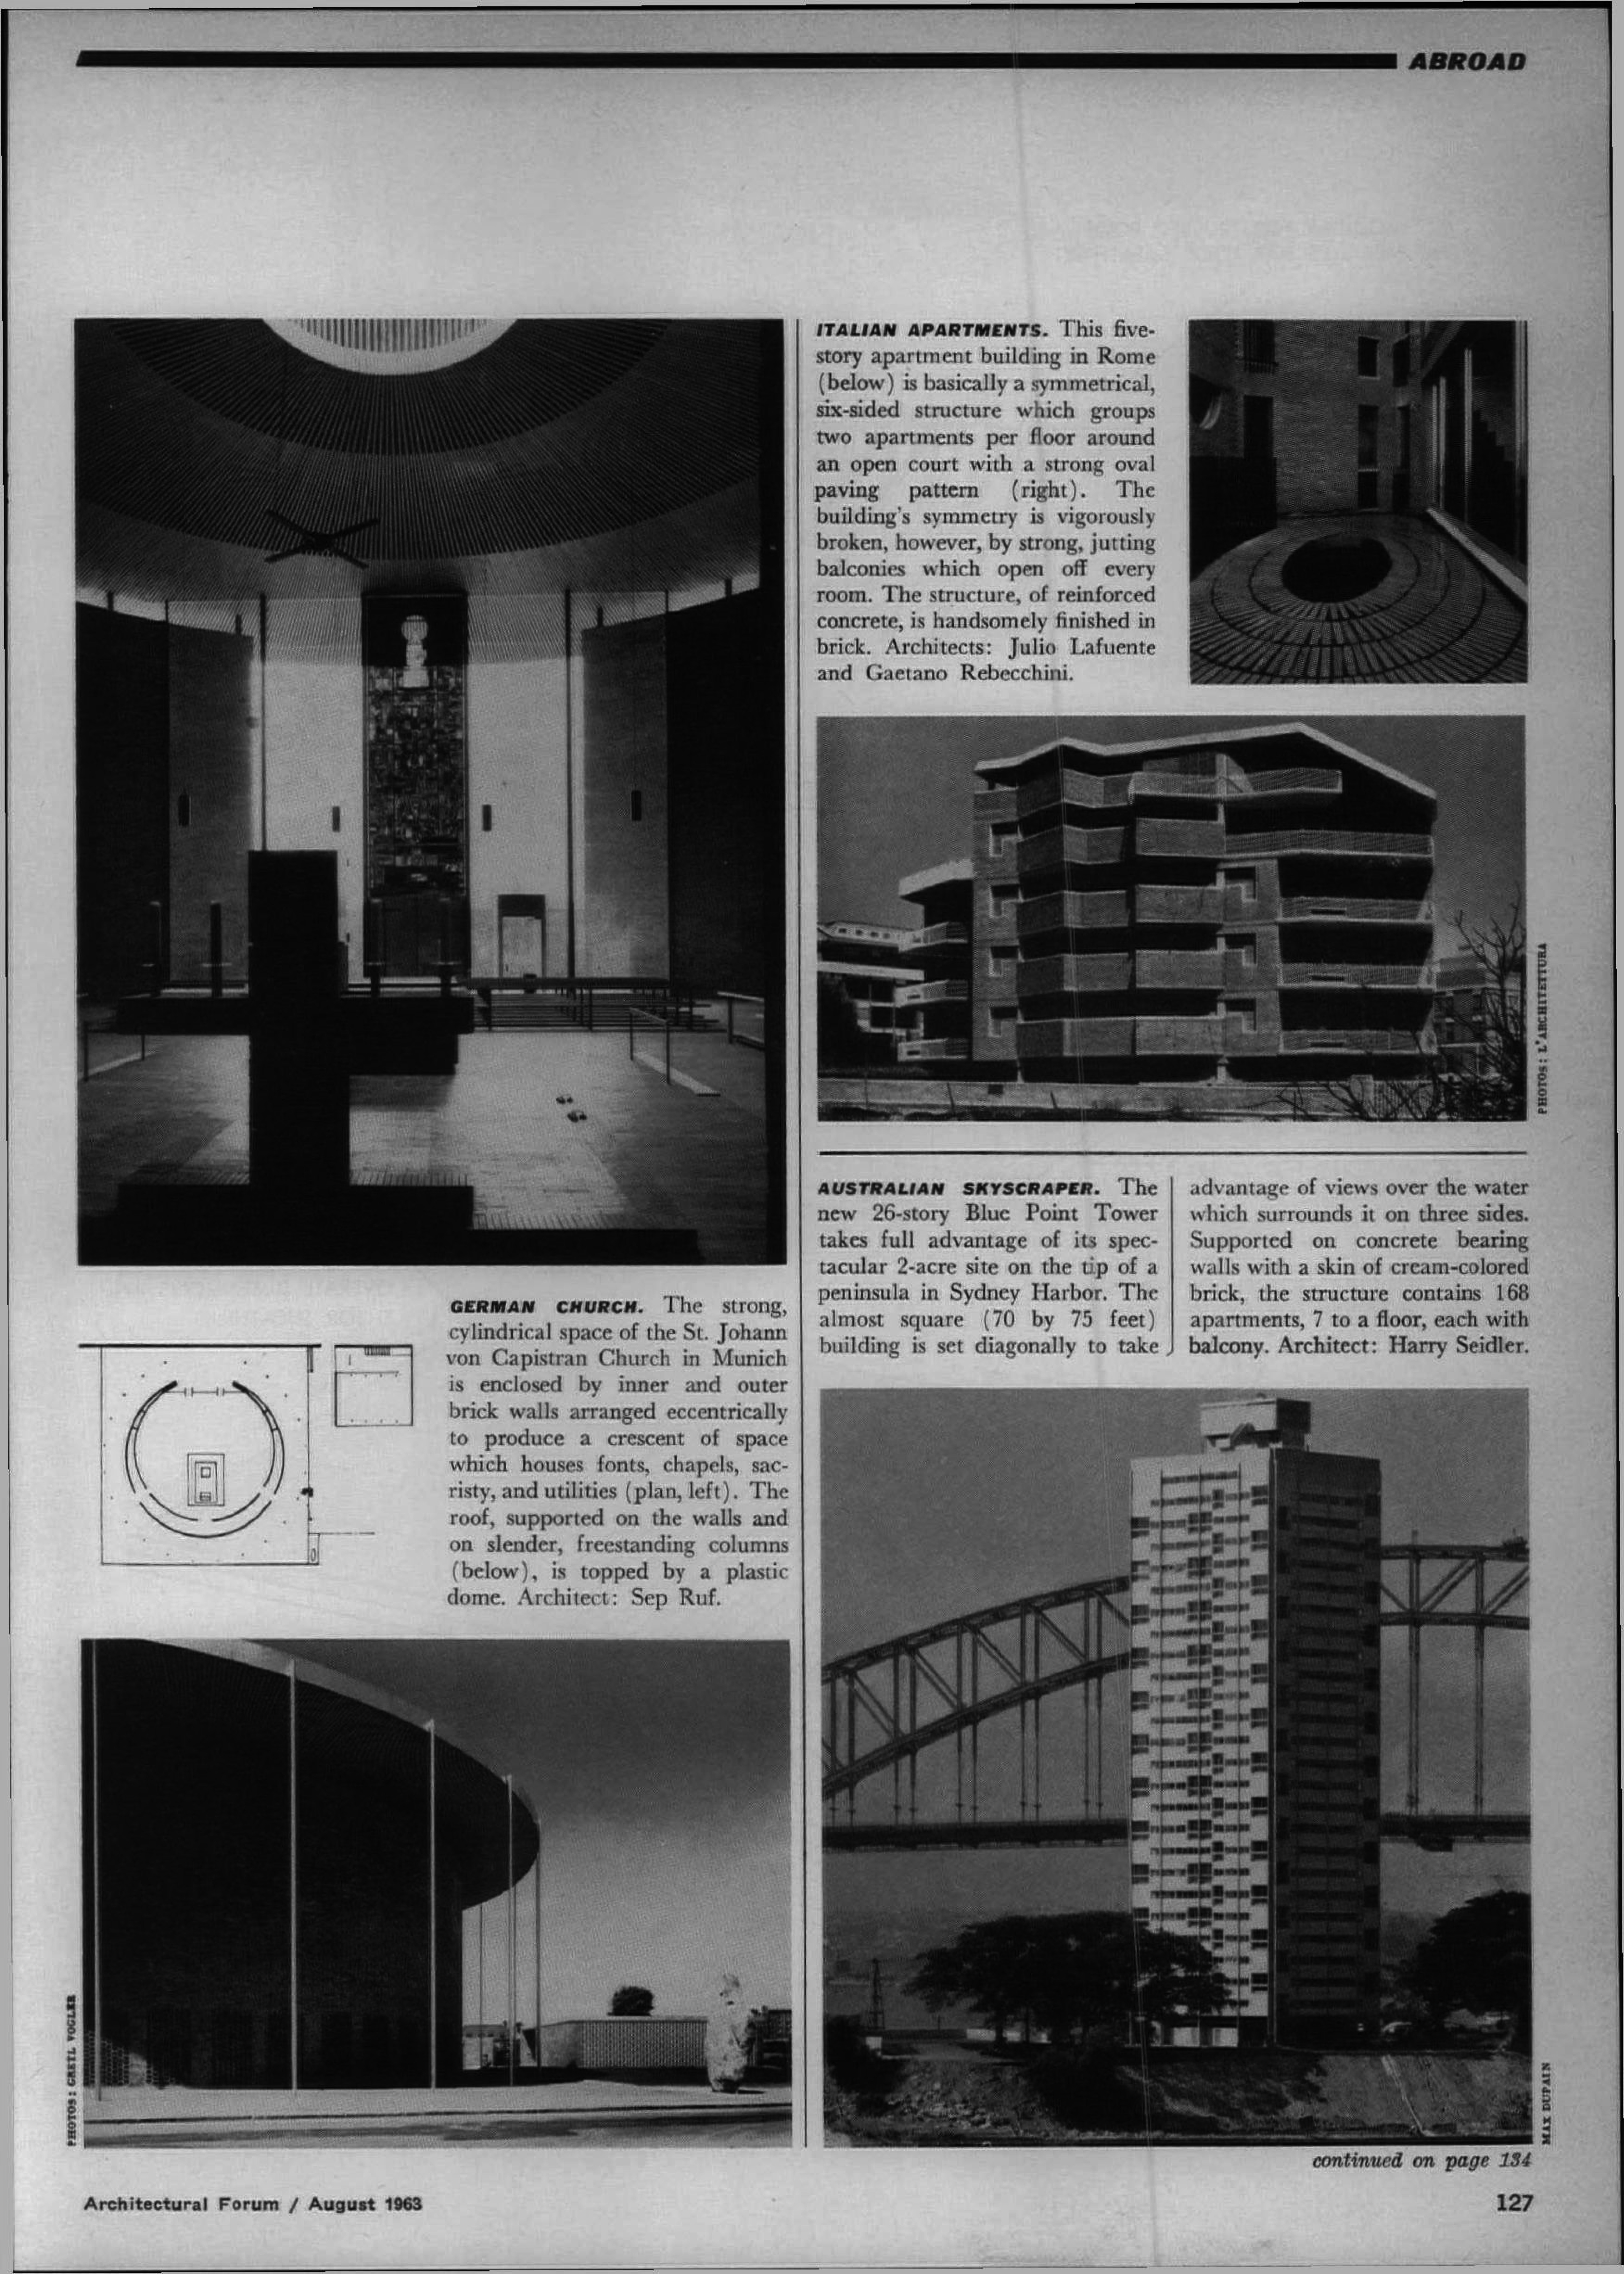 1963. “Italian apartments (Five story apartment building, Julio Lafuente and Gaetano Rebecchini, Rome)”, Architectural Forum, 120, no. 8 (August): 127.